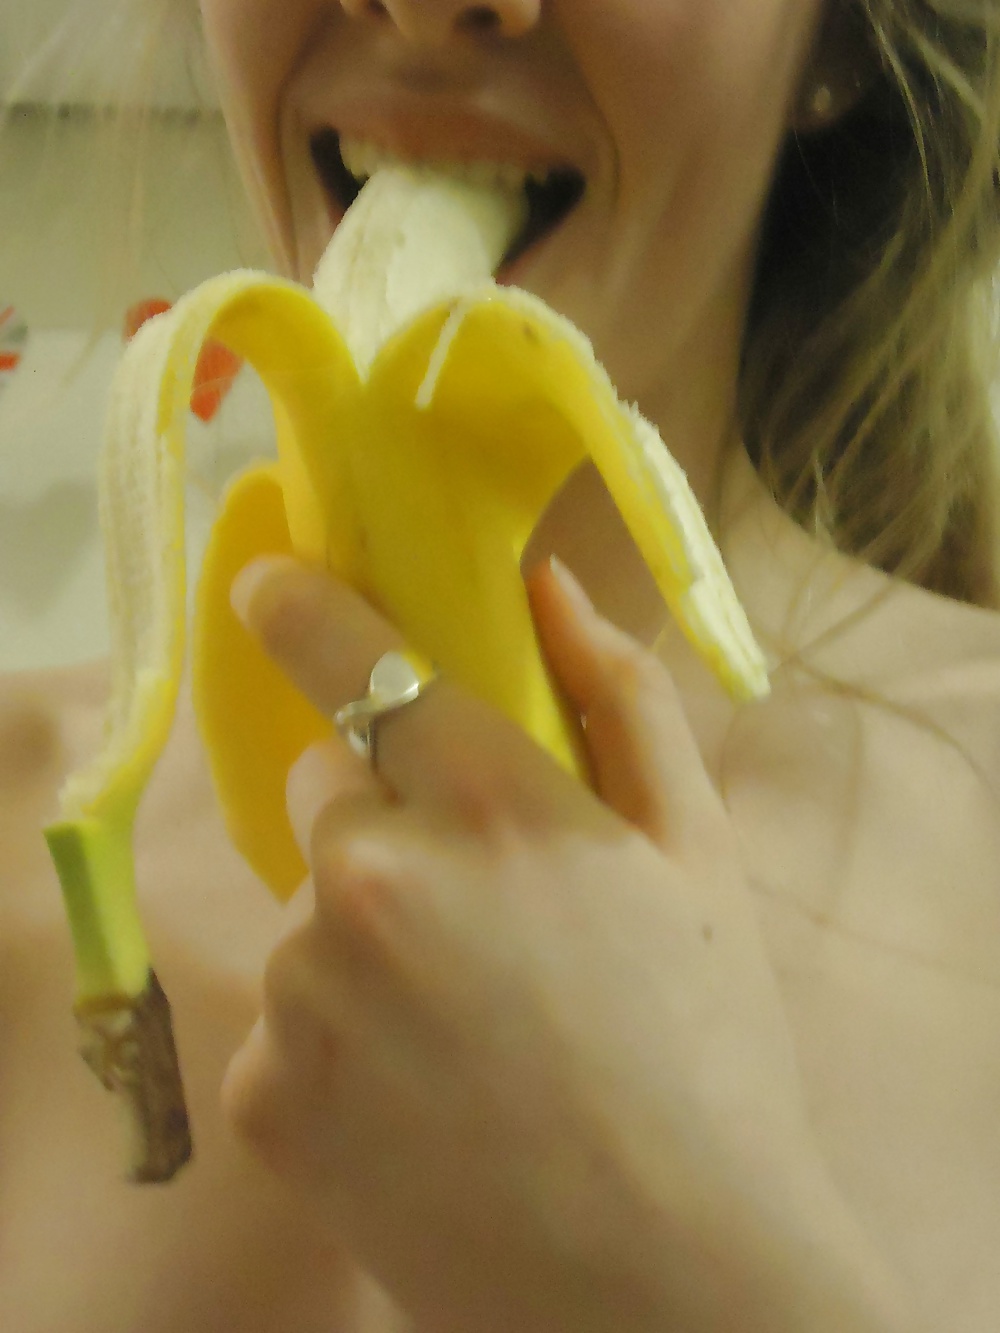 Sexy Pâle Fille Amateur Suce Une Banane #34429750